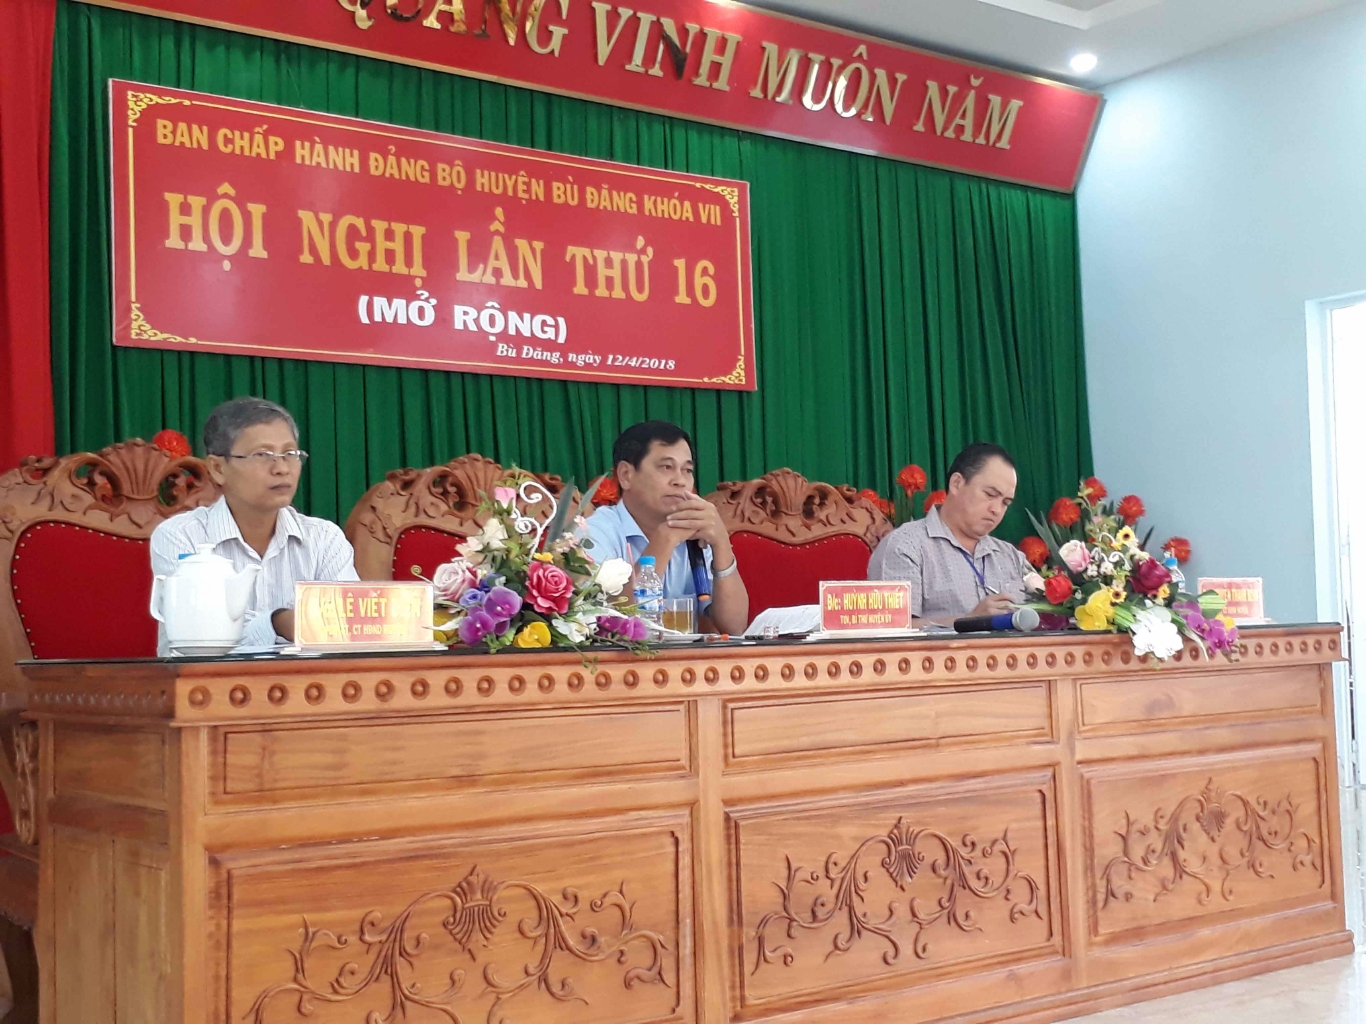 Ban chấp hành Đảng bộ huyện Bù Đăng khóa VII tổ chức hội nghị lần thứ 16 ( mở rộng).